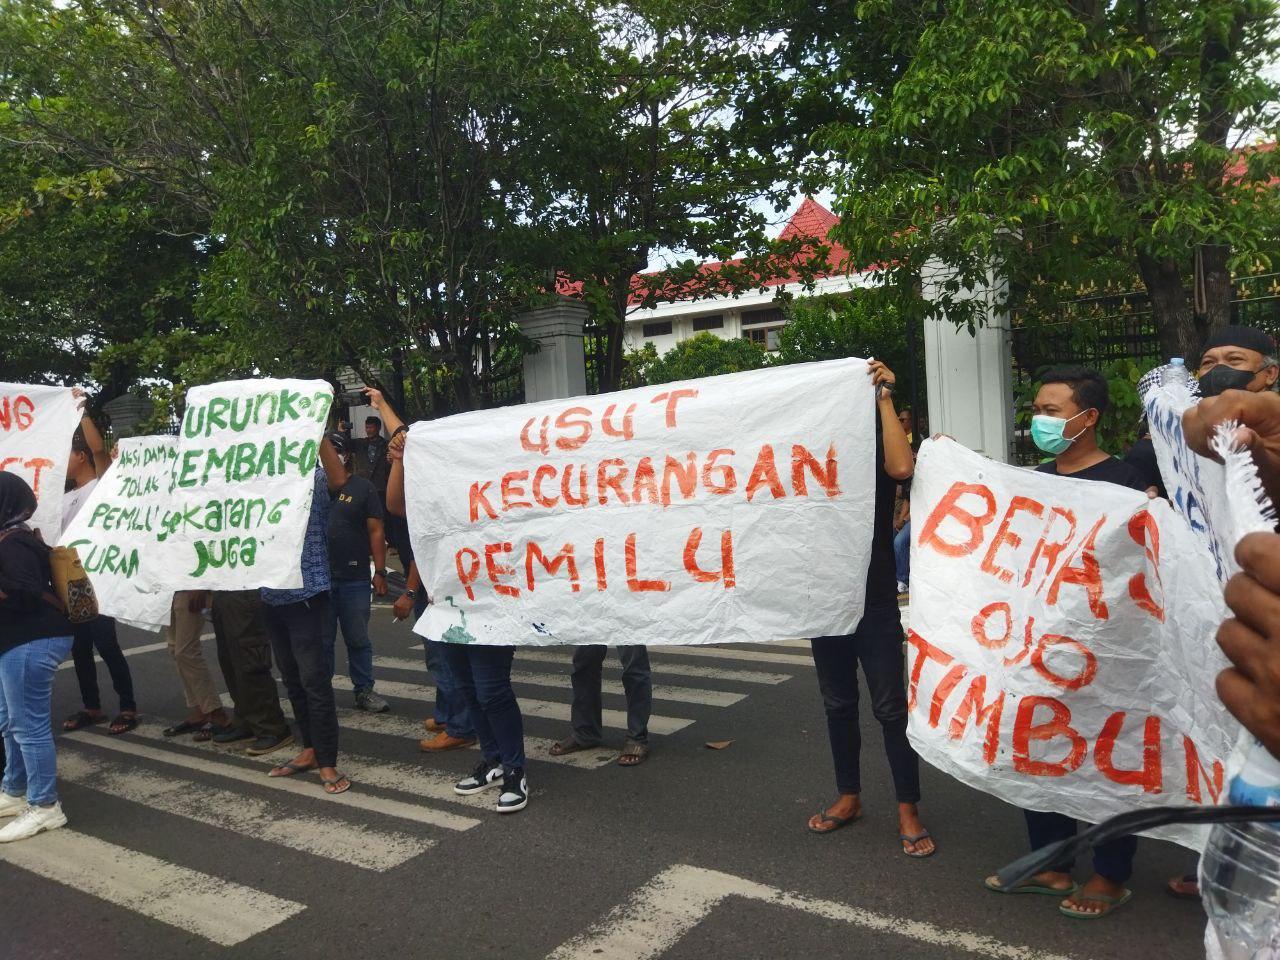 Foto : Aksi Demonstran di Depan Gedung DPRD Kabupaten Pati, akibat kekecewaan terhadap Jokowi. (Mitrapost.com/Ilham)